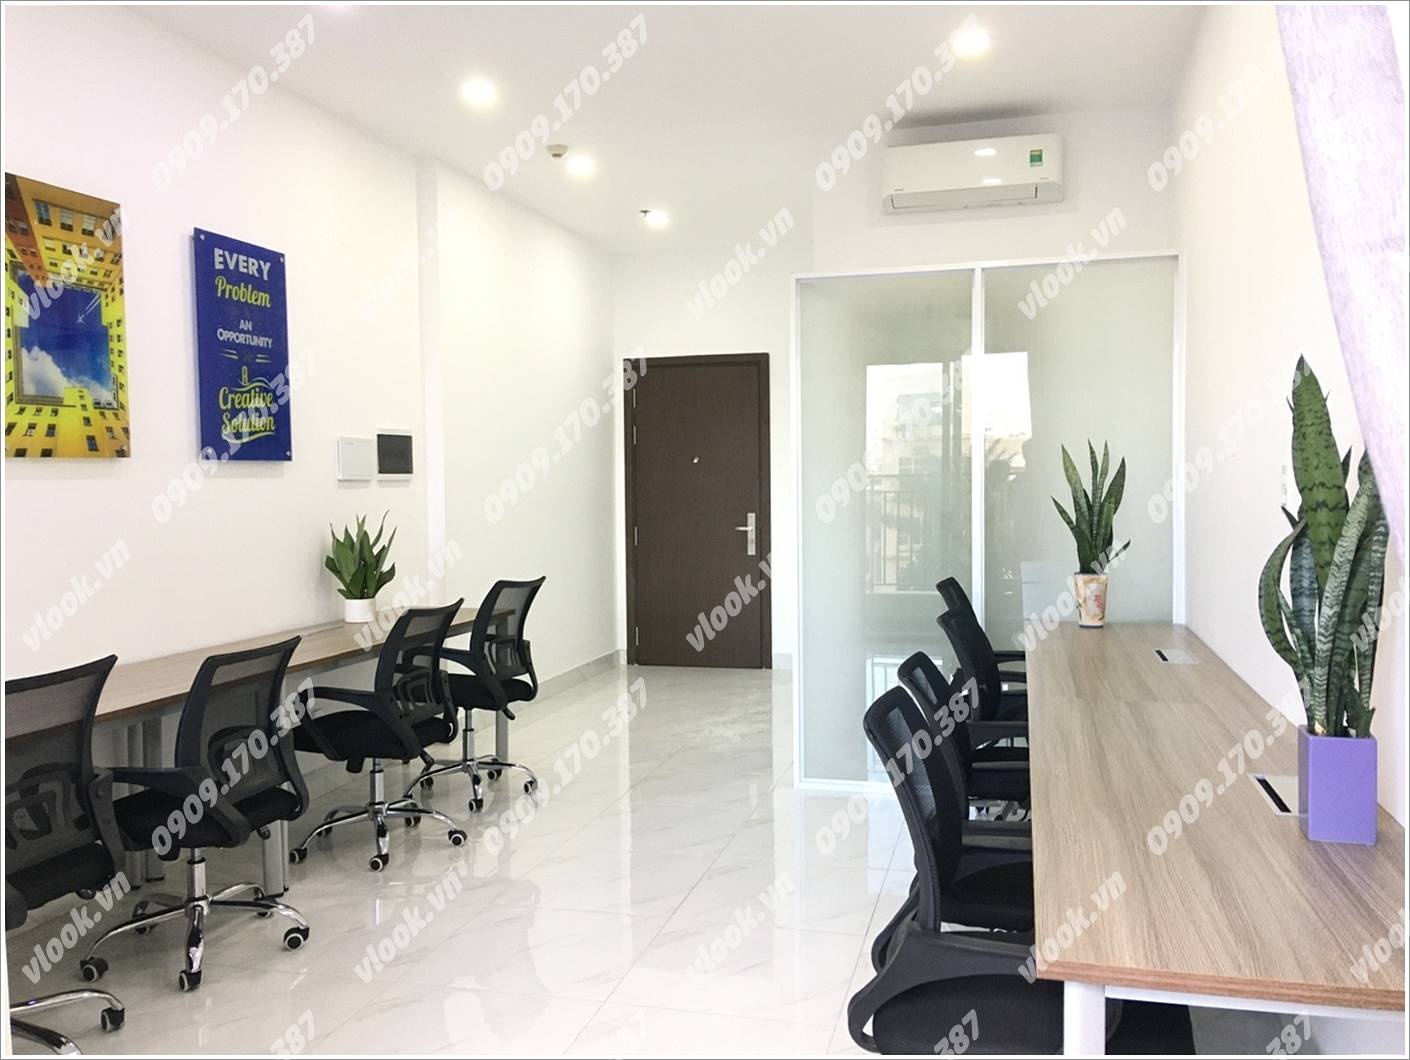 Cao ốc văn phòng cho thuê tòa nhà Wilton Tower, Nguyễn Văn thương, Quận Bình Thạnh, TPHCM - vlook.vn